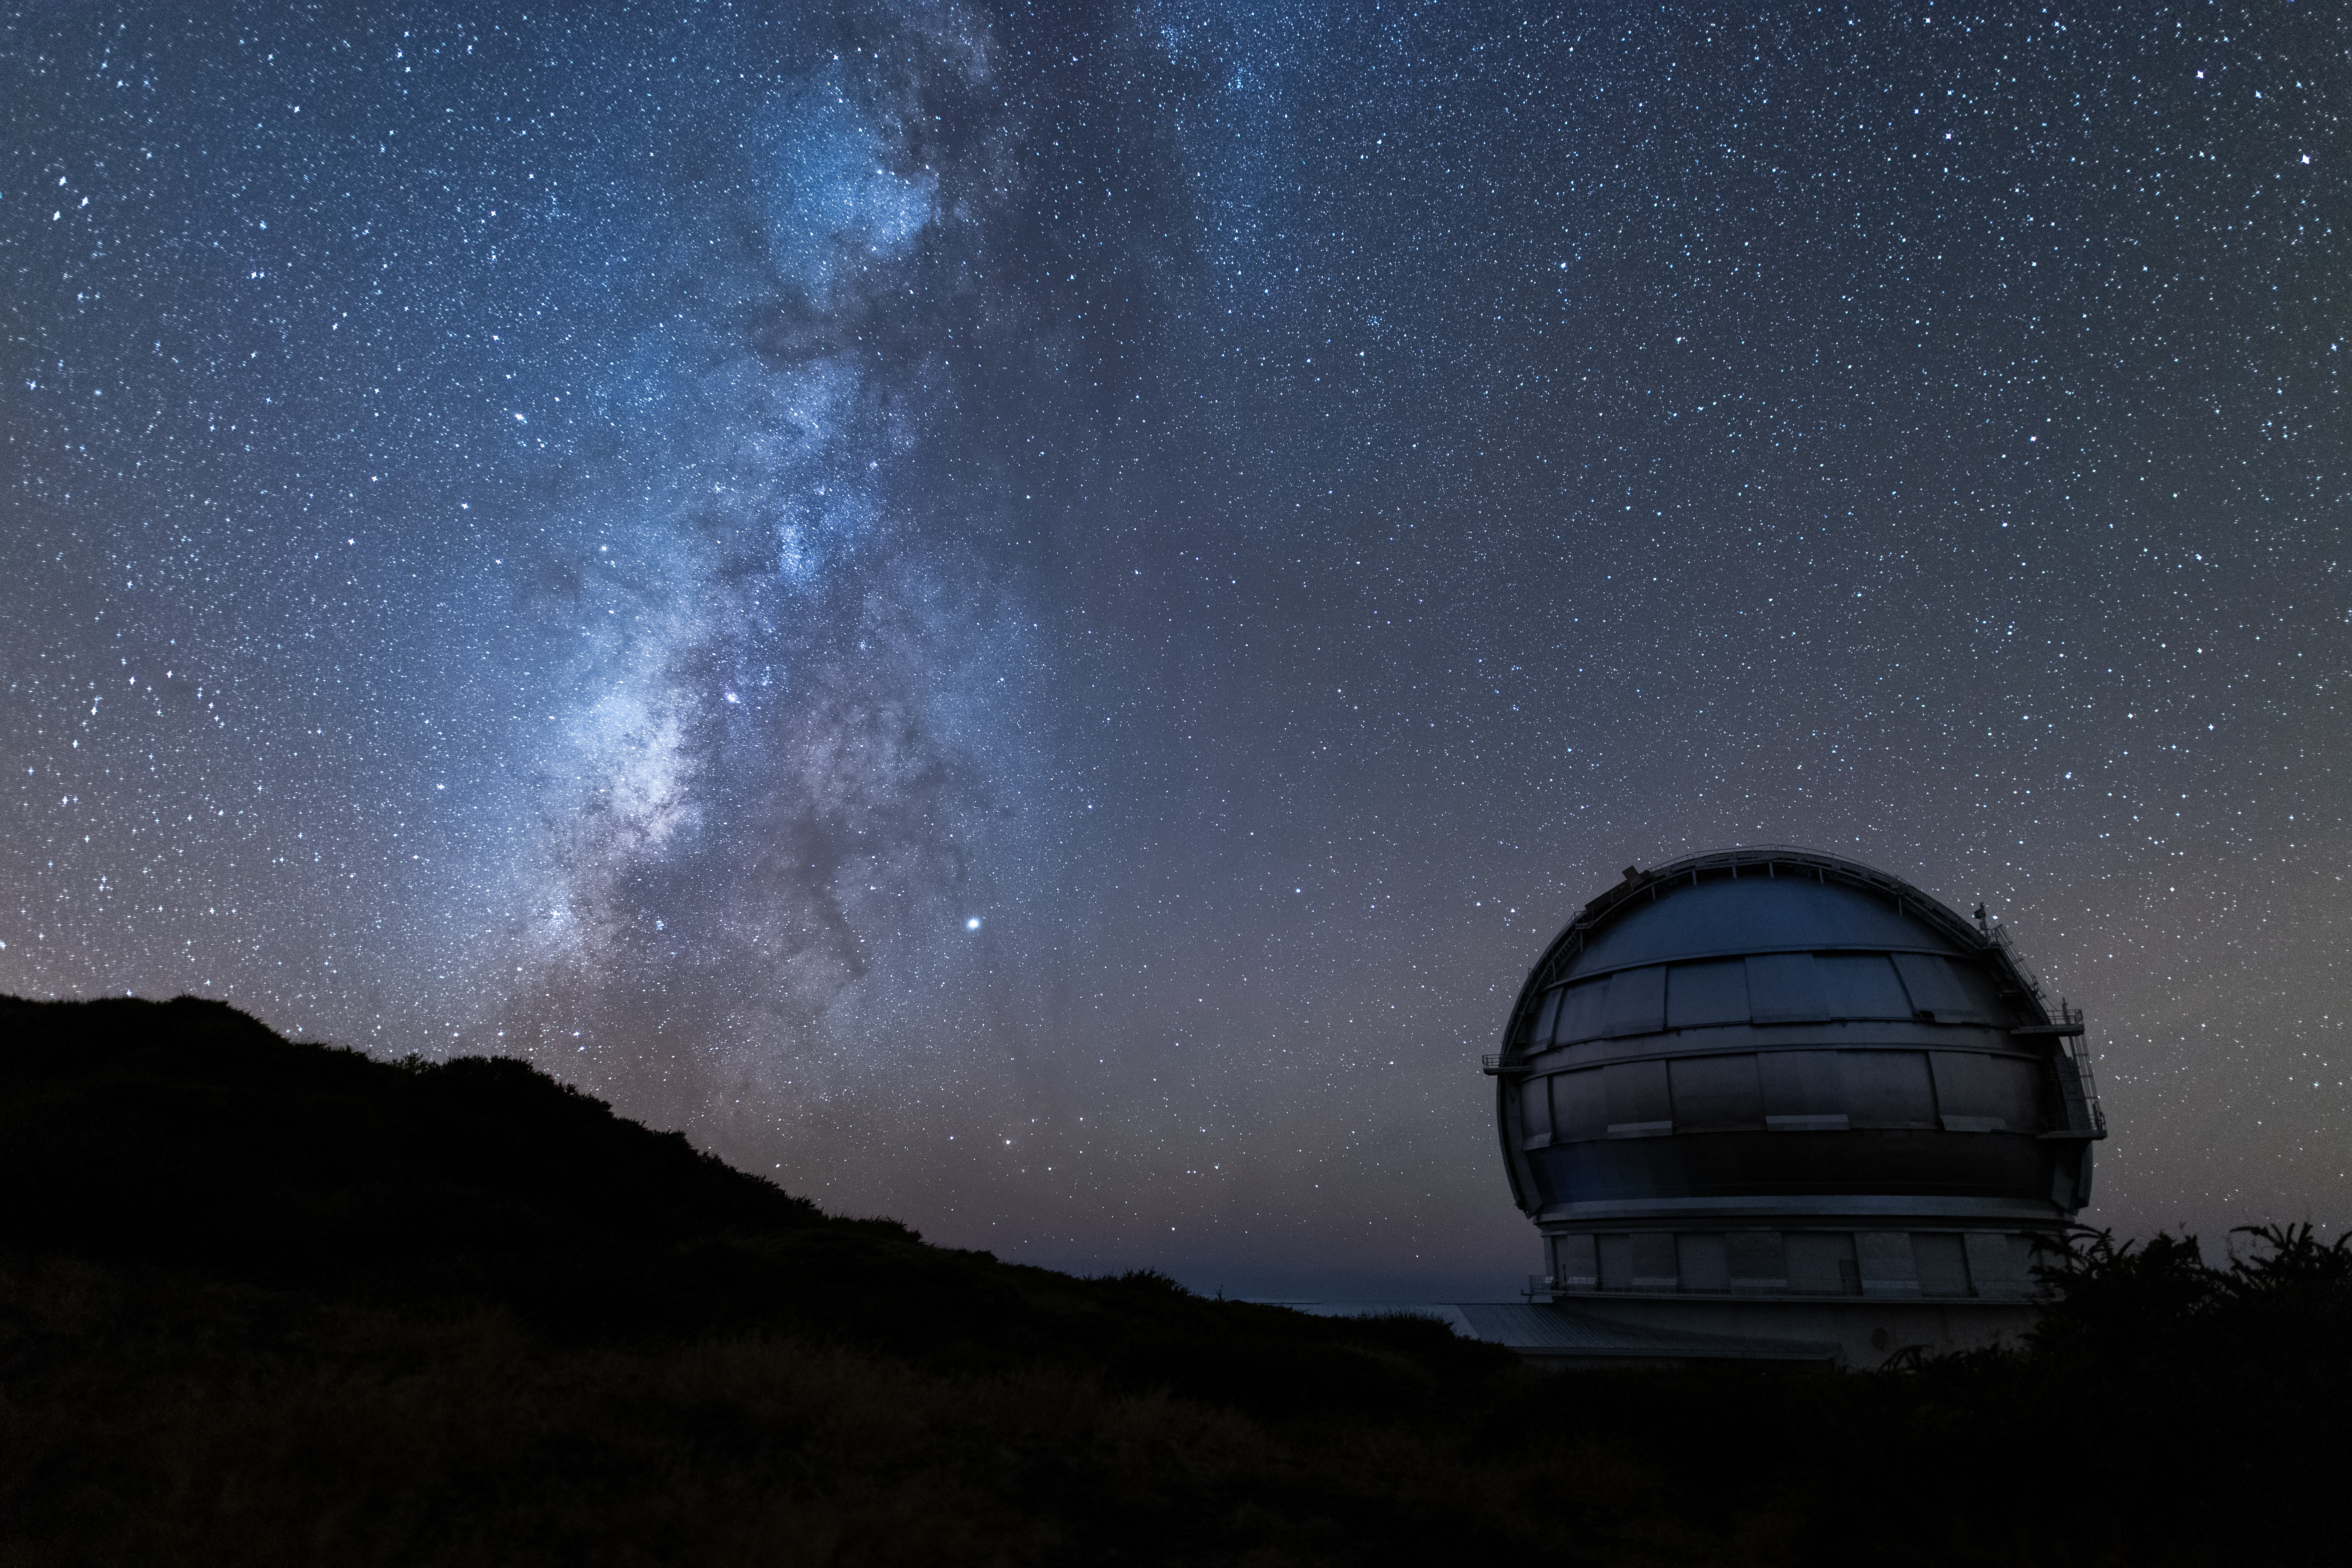 En una noche despejada se estima que se observan a simple vista alrededor de 3 mil estrellas.   (Foto Prensa Libre: David Monje/Unsplash)